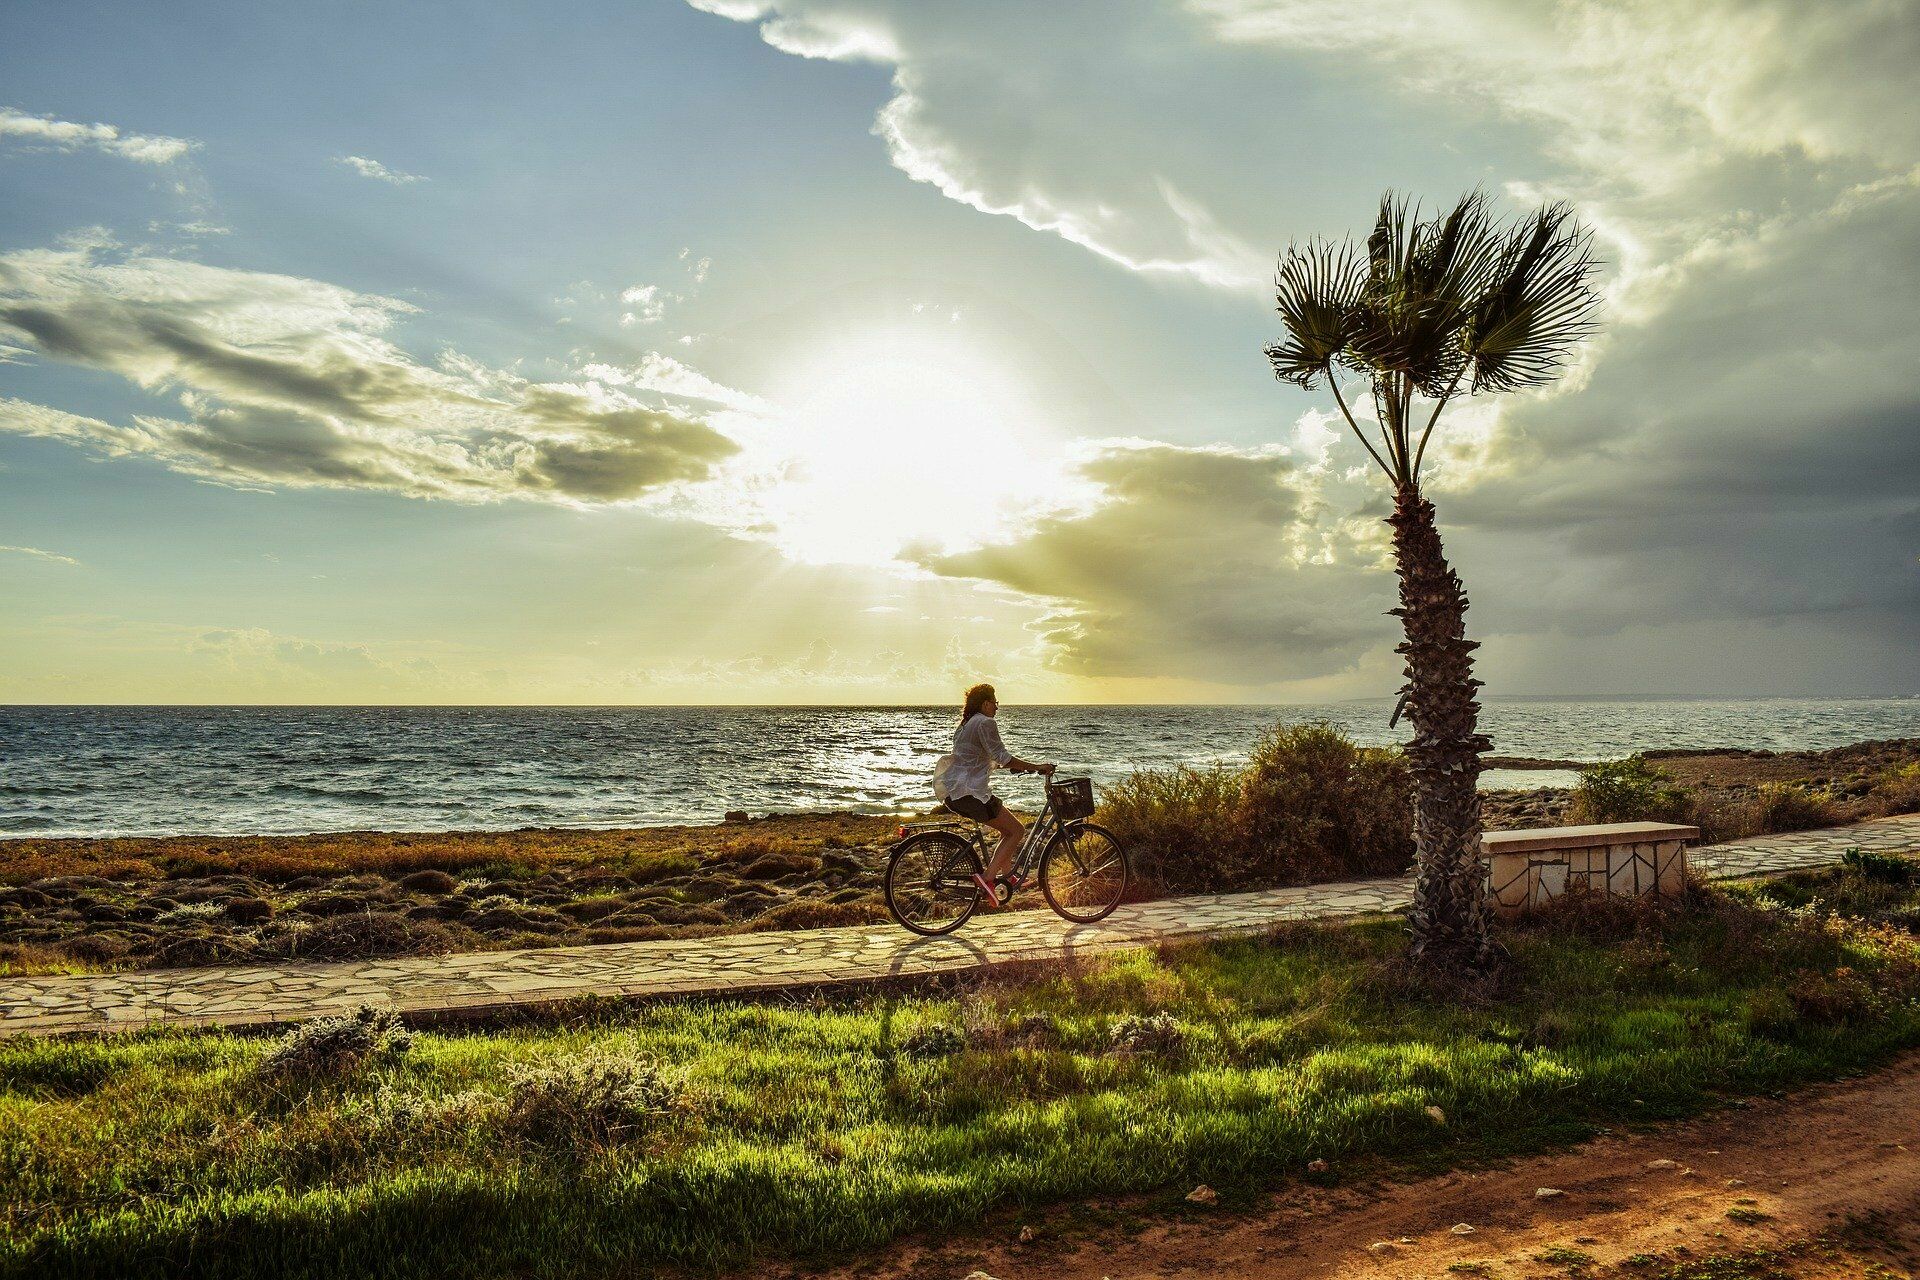 Кипр пообещал компенсировать расходы туристам, если они заразятся COVID-19 на острове